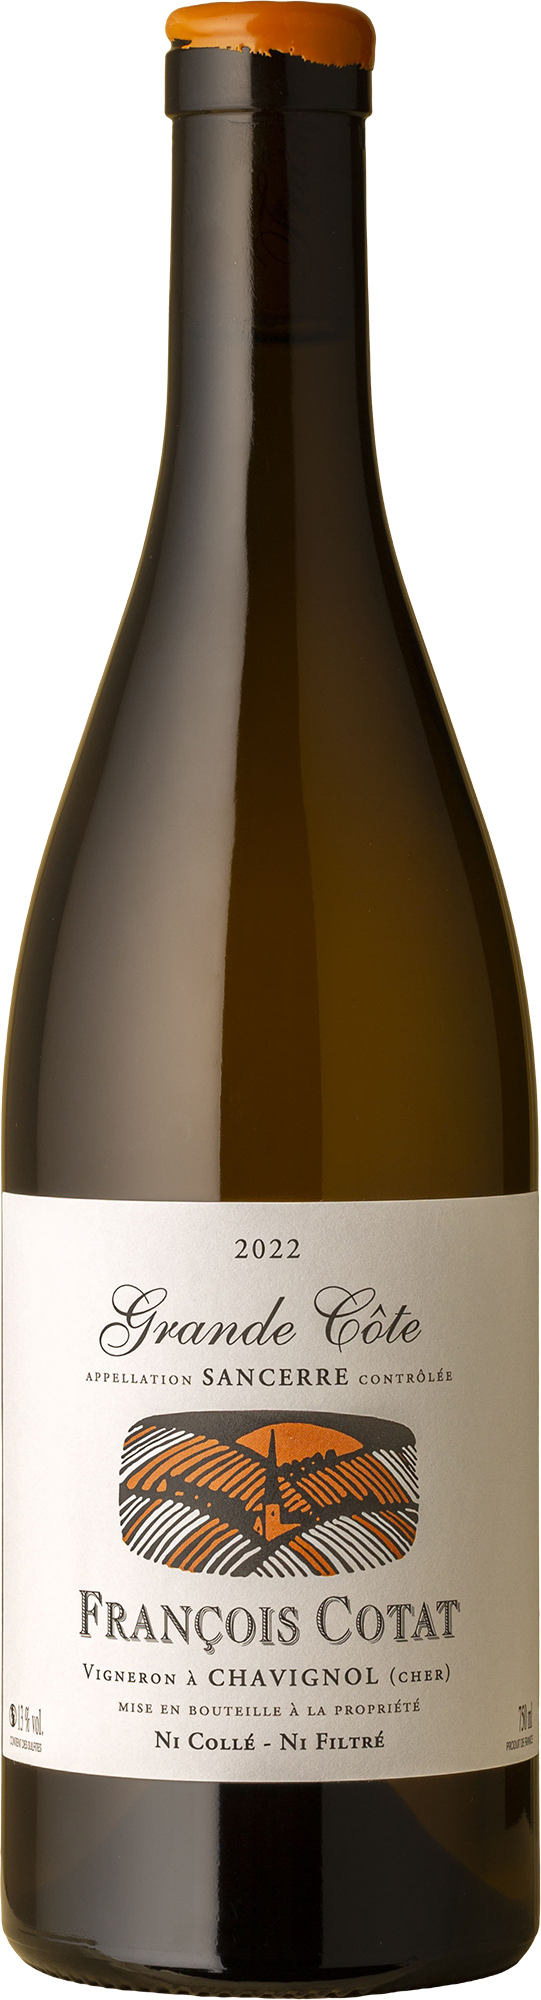 François Cotat - La Grande Côte Sancerre Sauvignon Blanc 2022 White Wine